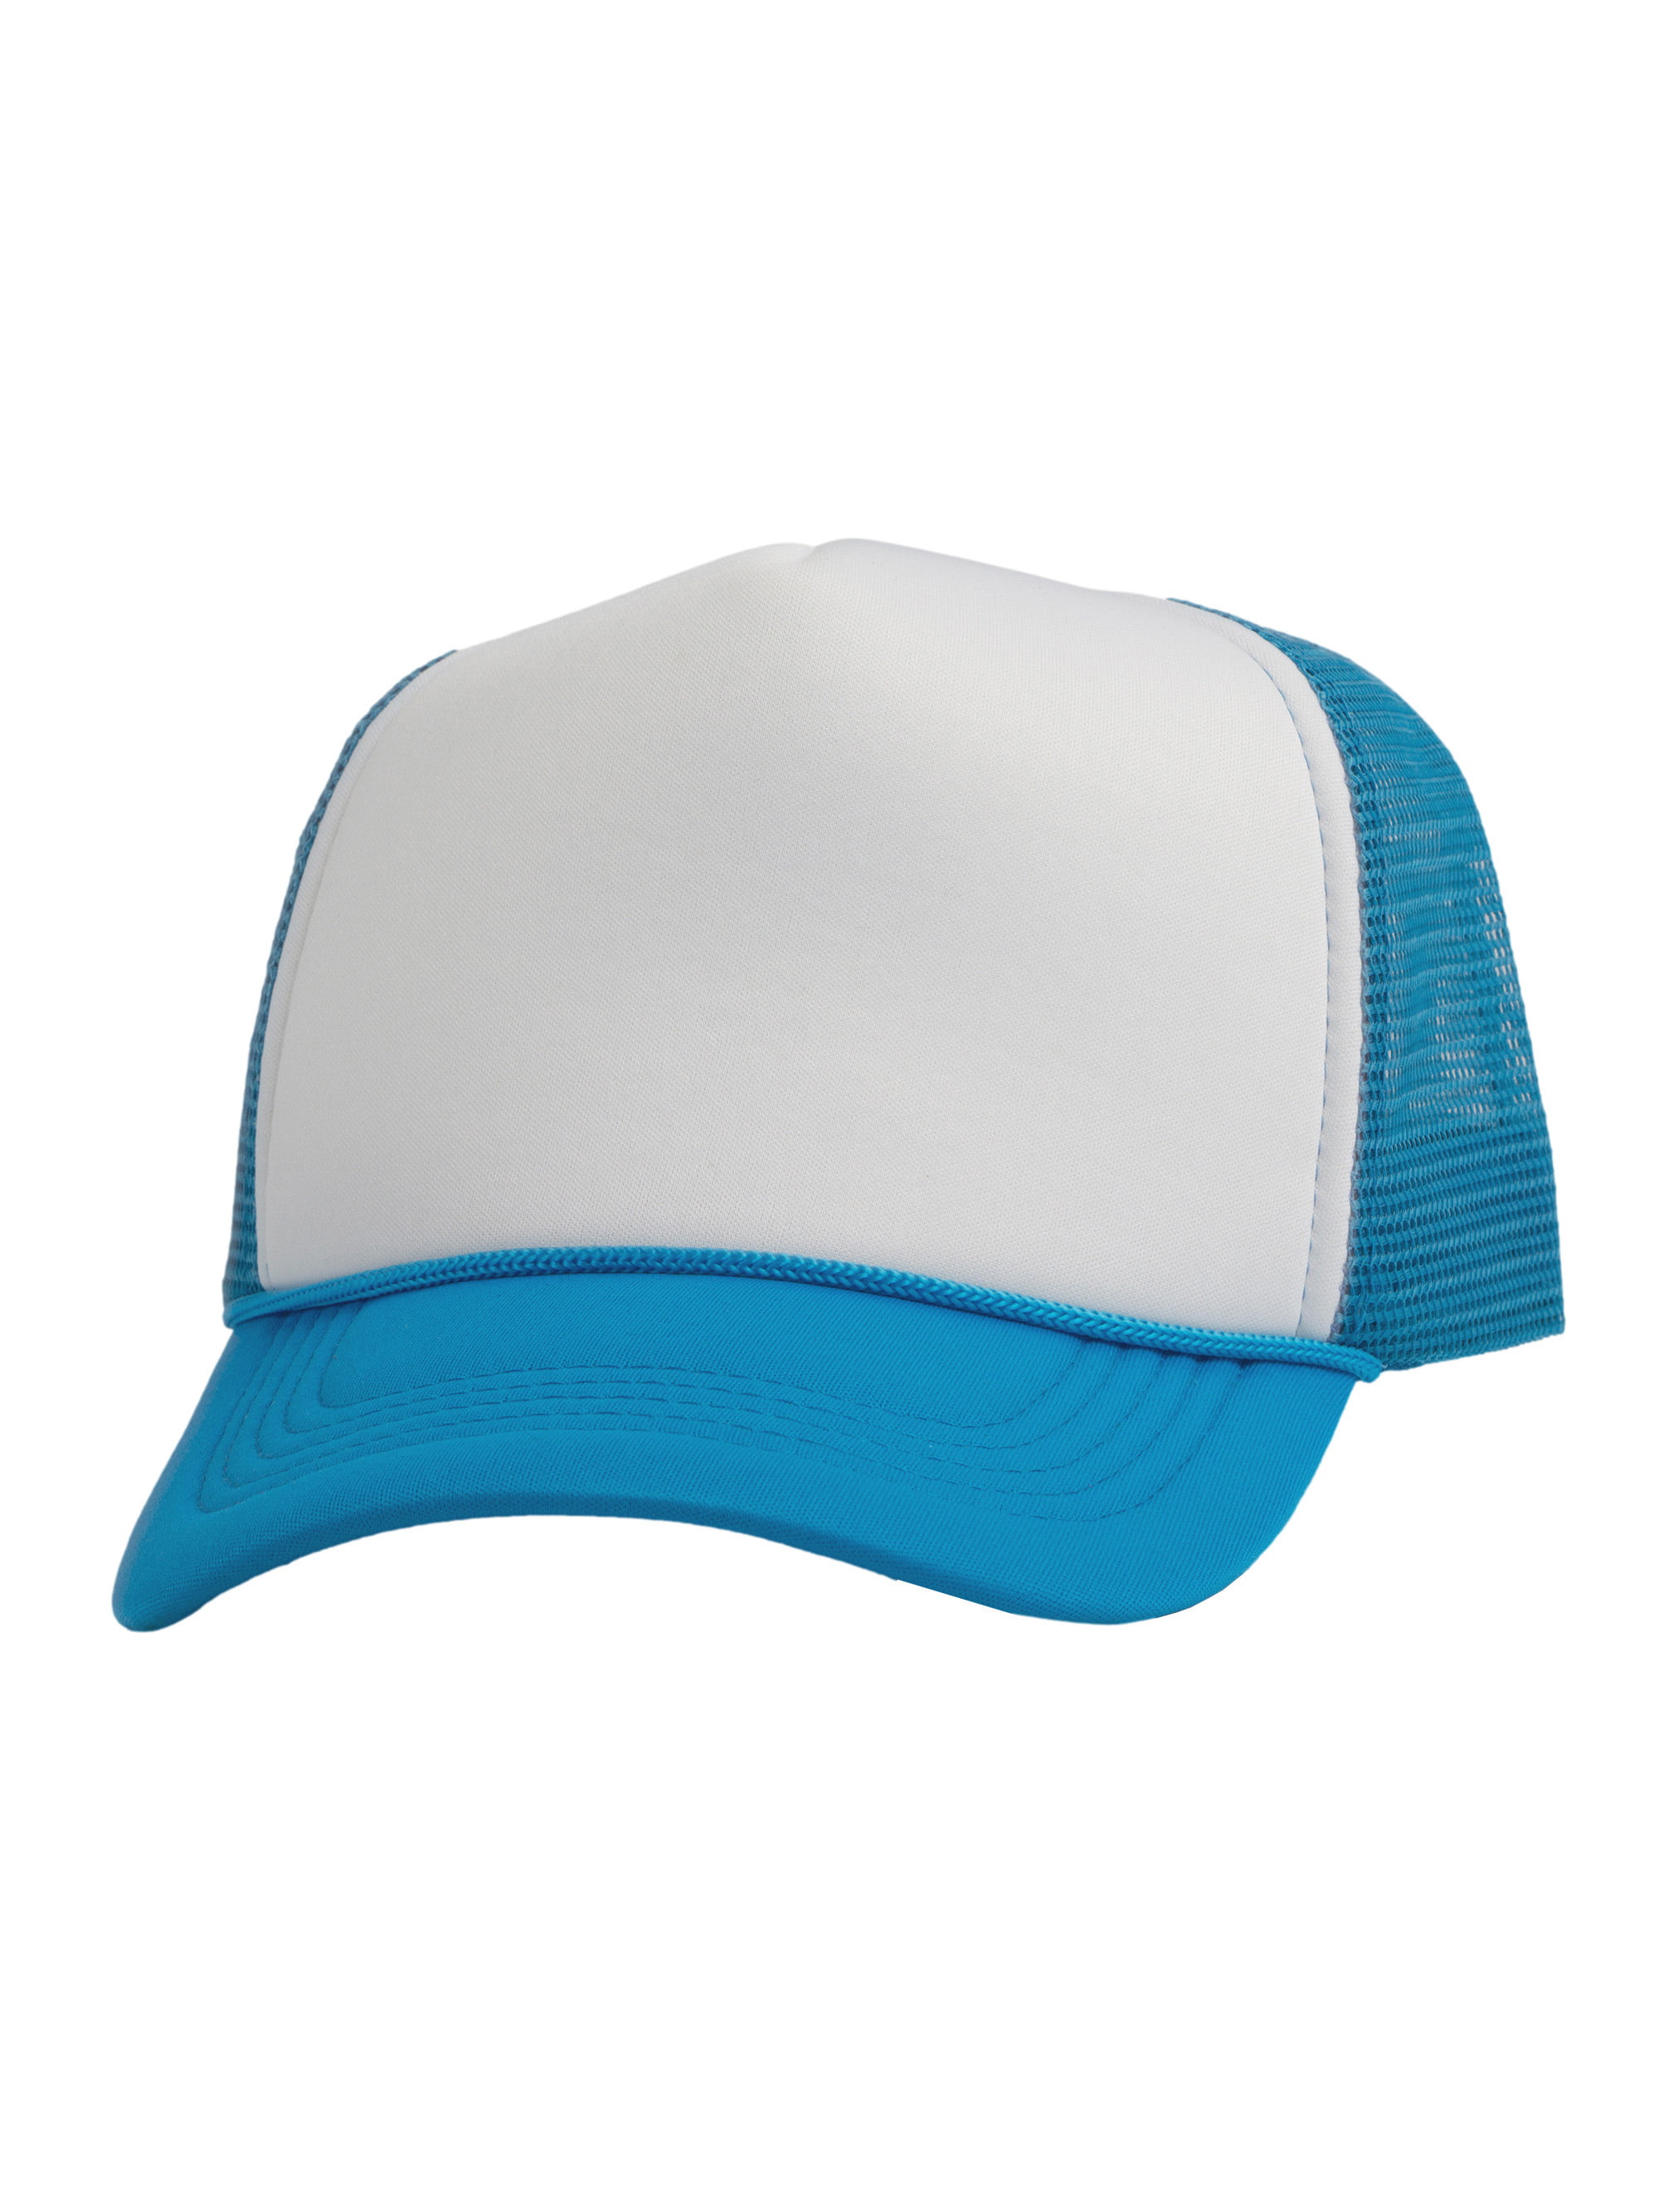 Top Headwear Blank Trucker Hat - Mens Trucker Hats Foam Mesh Snapback  White/Red 